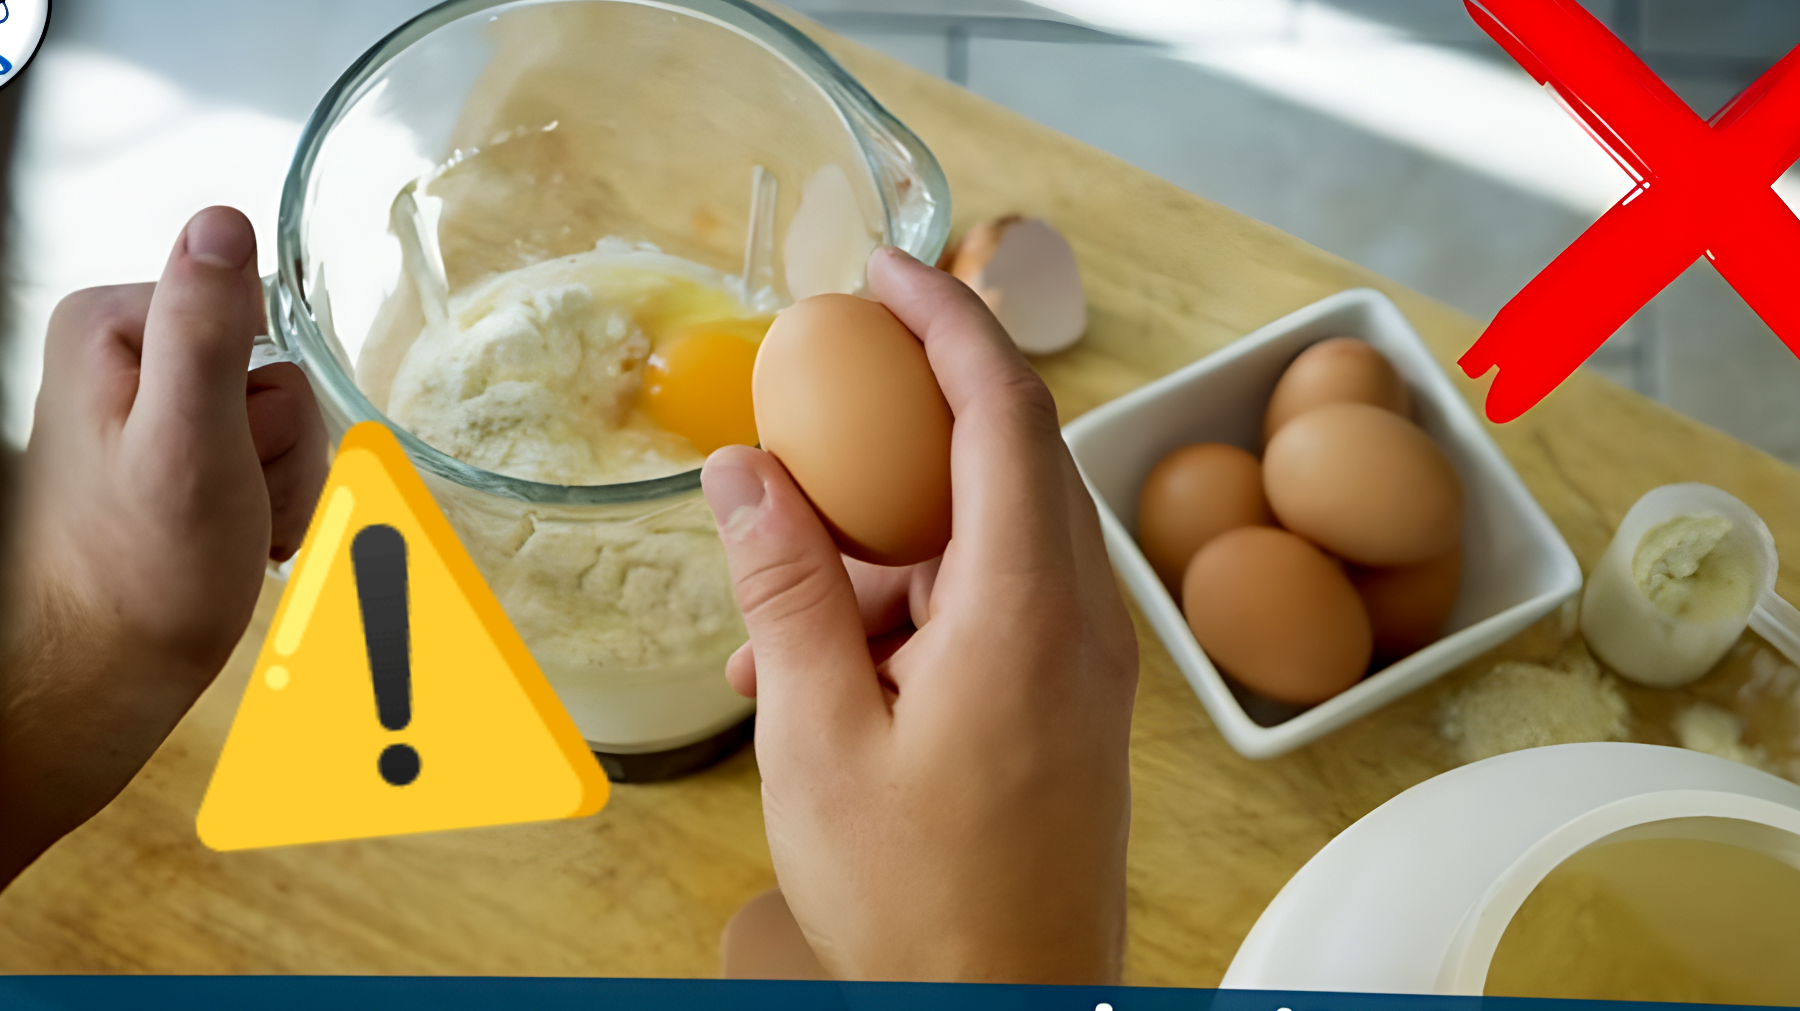 El error que todos cometen con los licuados: "Los huevos crudos podrían ser peligrosos"